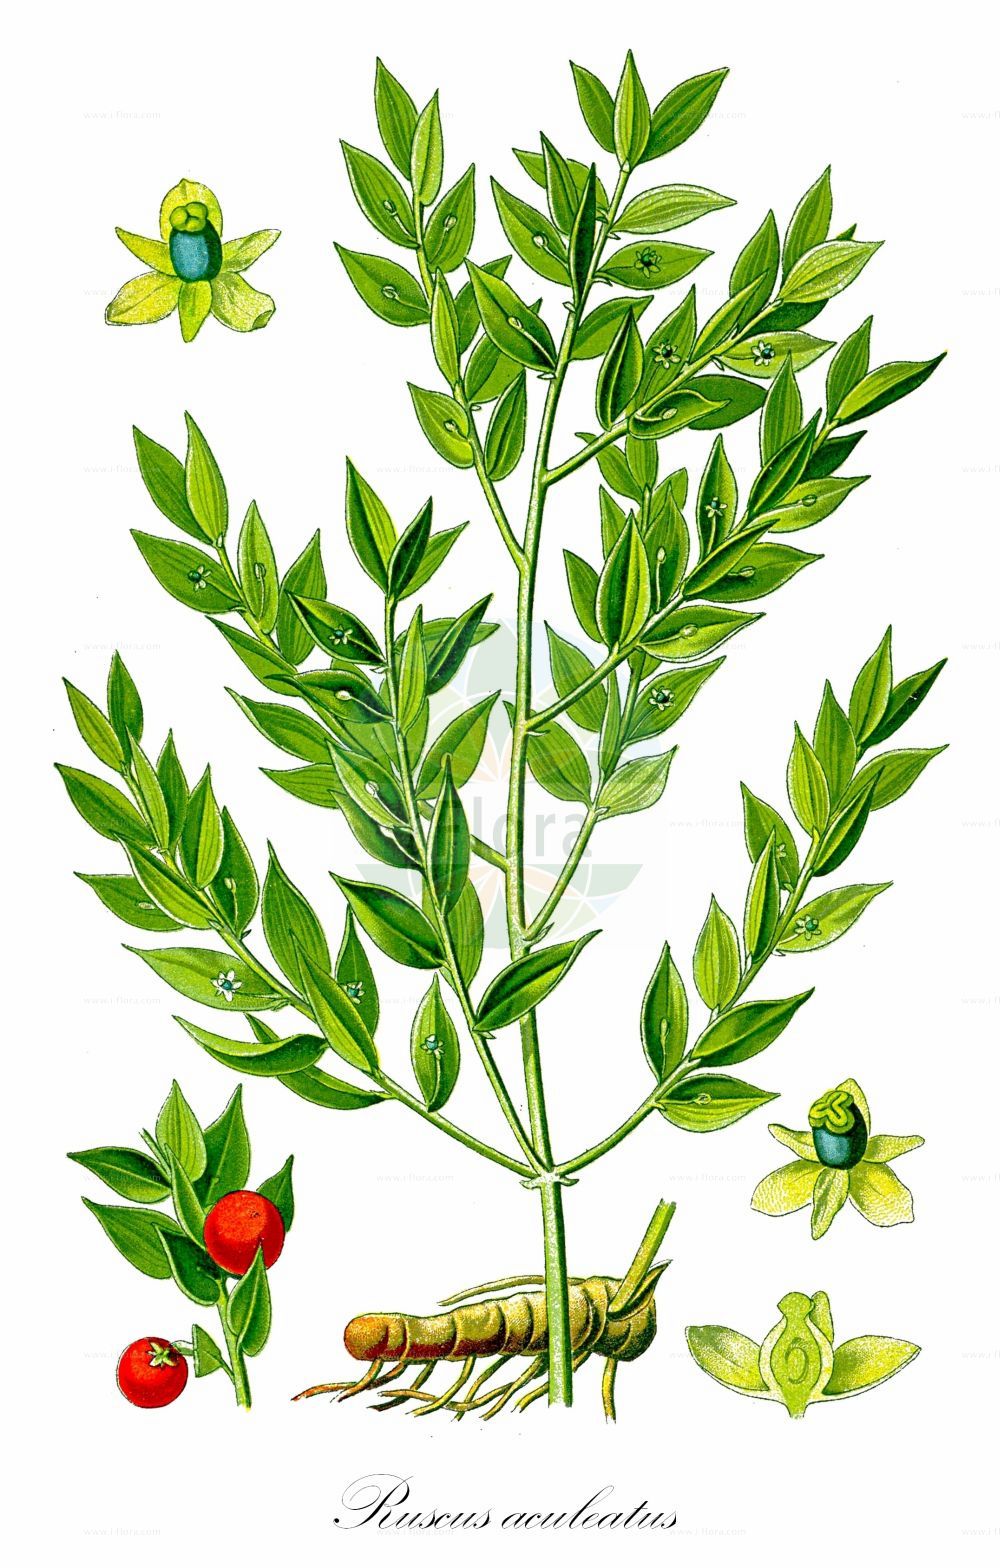 Historische Abbildung von Ruscus aculeatus (Butcher's-broom). Das Bild zeigt Blatt, Bluete, Frucht und Same. ---- Historical Drawing of Ruscus aculeatus (Butcher's-broom). The image is showing leaf, flower, fruit and seed.(Ruscus aculeatus,Butcher's-broom,Oxymyrsine pungens,Ruscus aculeatus,Ruscus flexuosus,Ruscus laxus,Ruscus parasiticus,Ruscus ponticus,Ruscus,Asparagaceae,Spargelgewächse,Asparagus family,Blatt,Bluete,Frucht,Same,leaf,flower,fruit,seed,Thomé (1885))